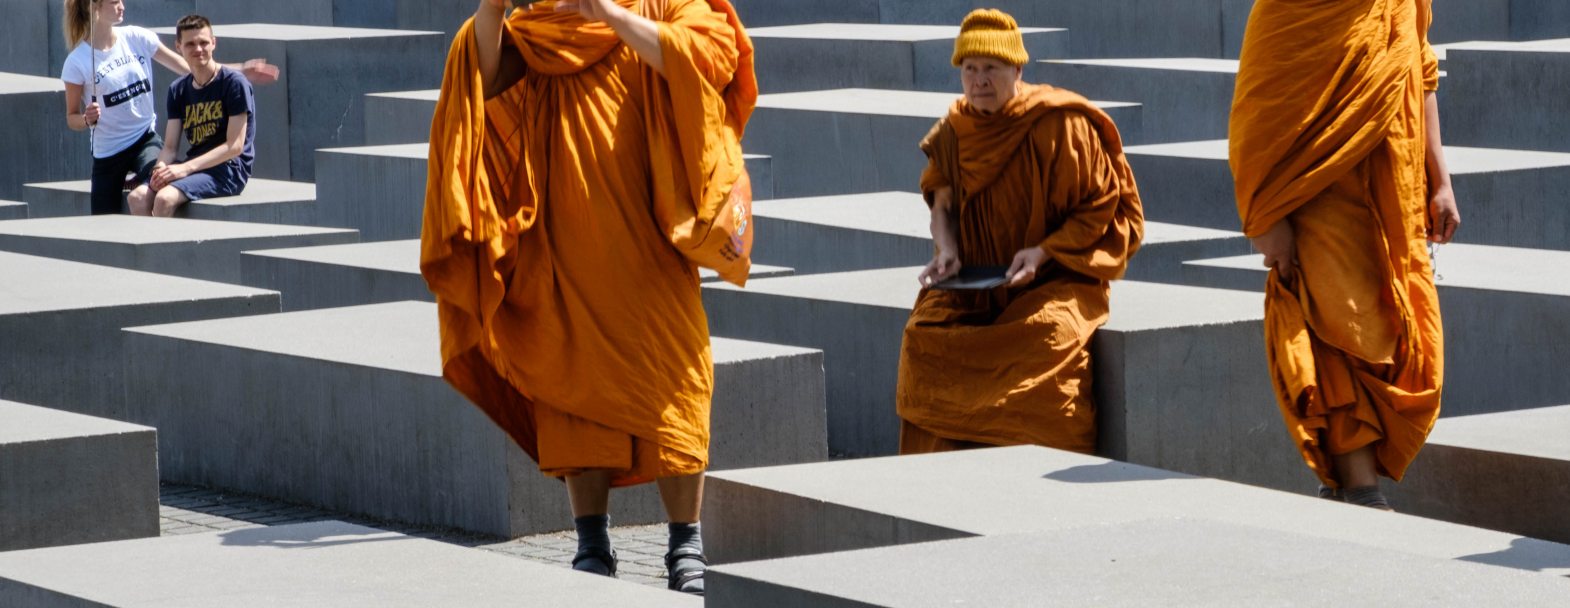 © Istock / hanohiki / Moines bouddhistes visitant le Mémorial de l’Holocauste à Berlin